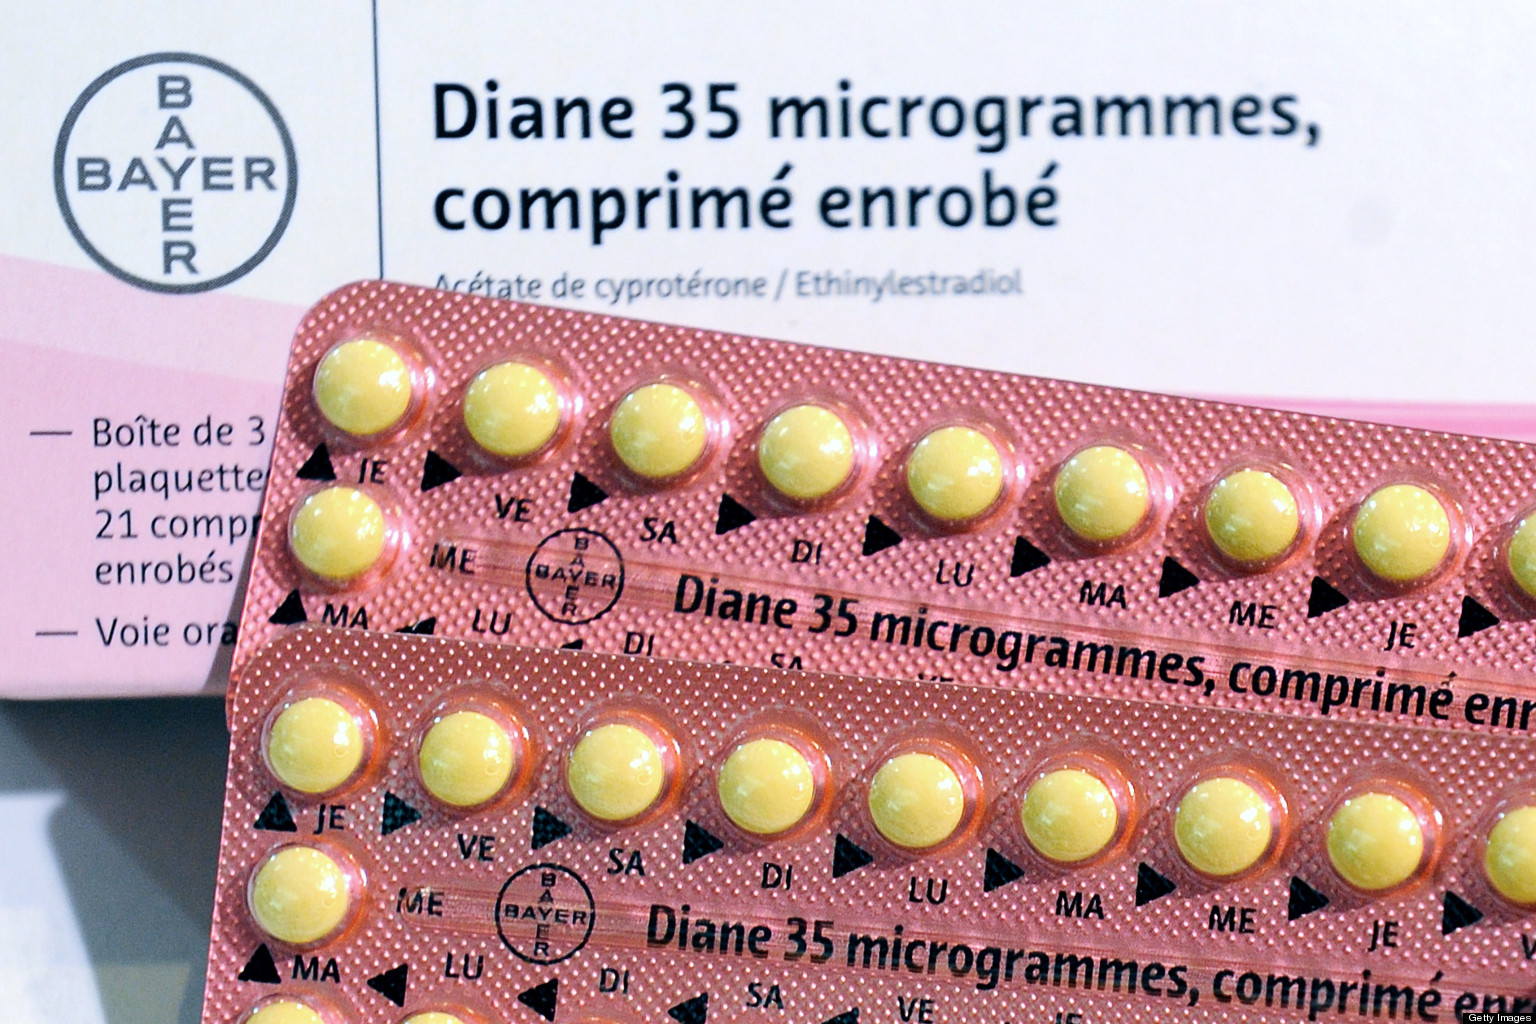 Диане 35 состав. Противозачаточные таблетки Диане 35. Diana 35 противозачаточные. Ципротерон этинилэстрадиол. Диане-35 таблетки.